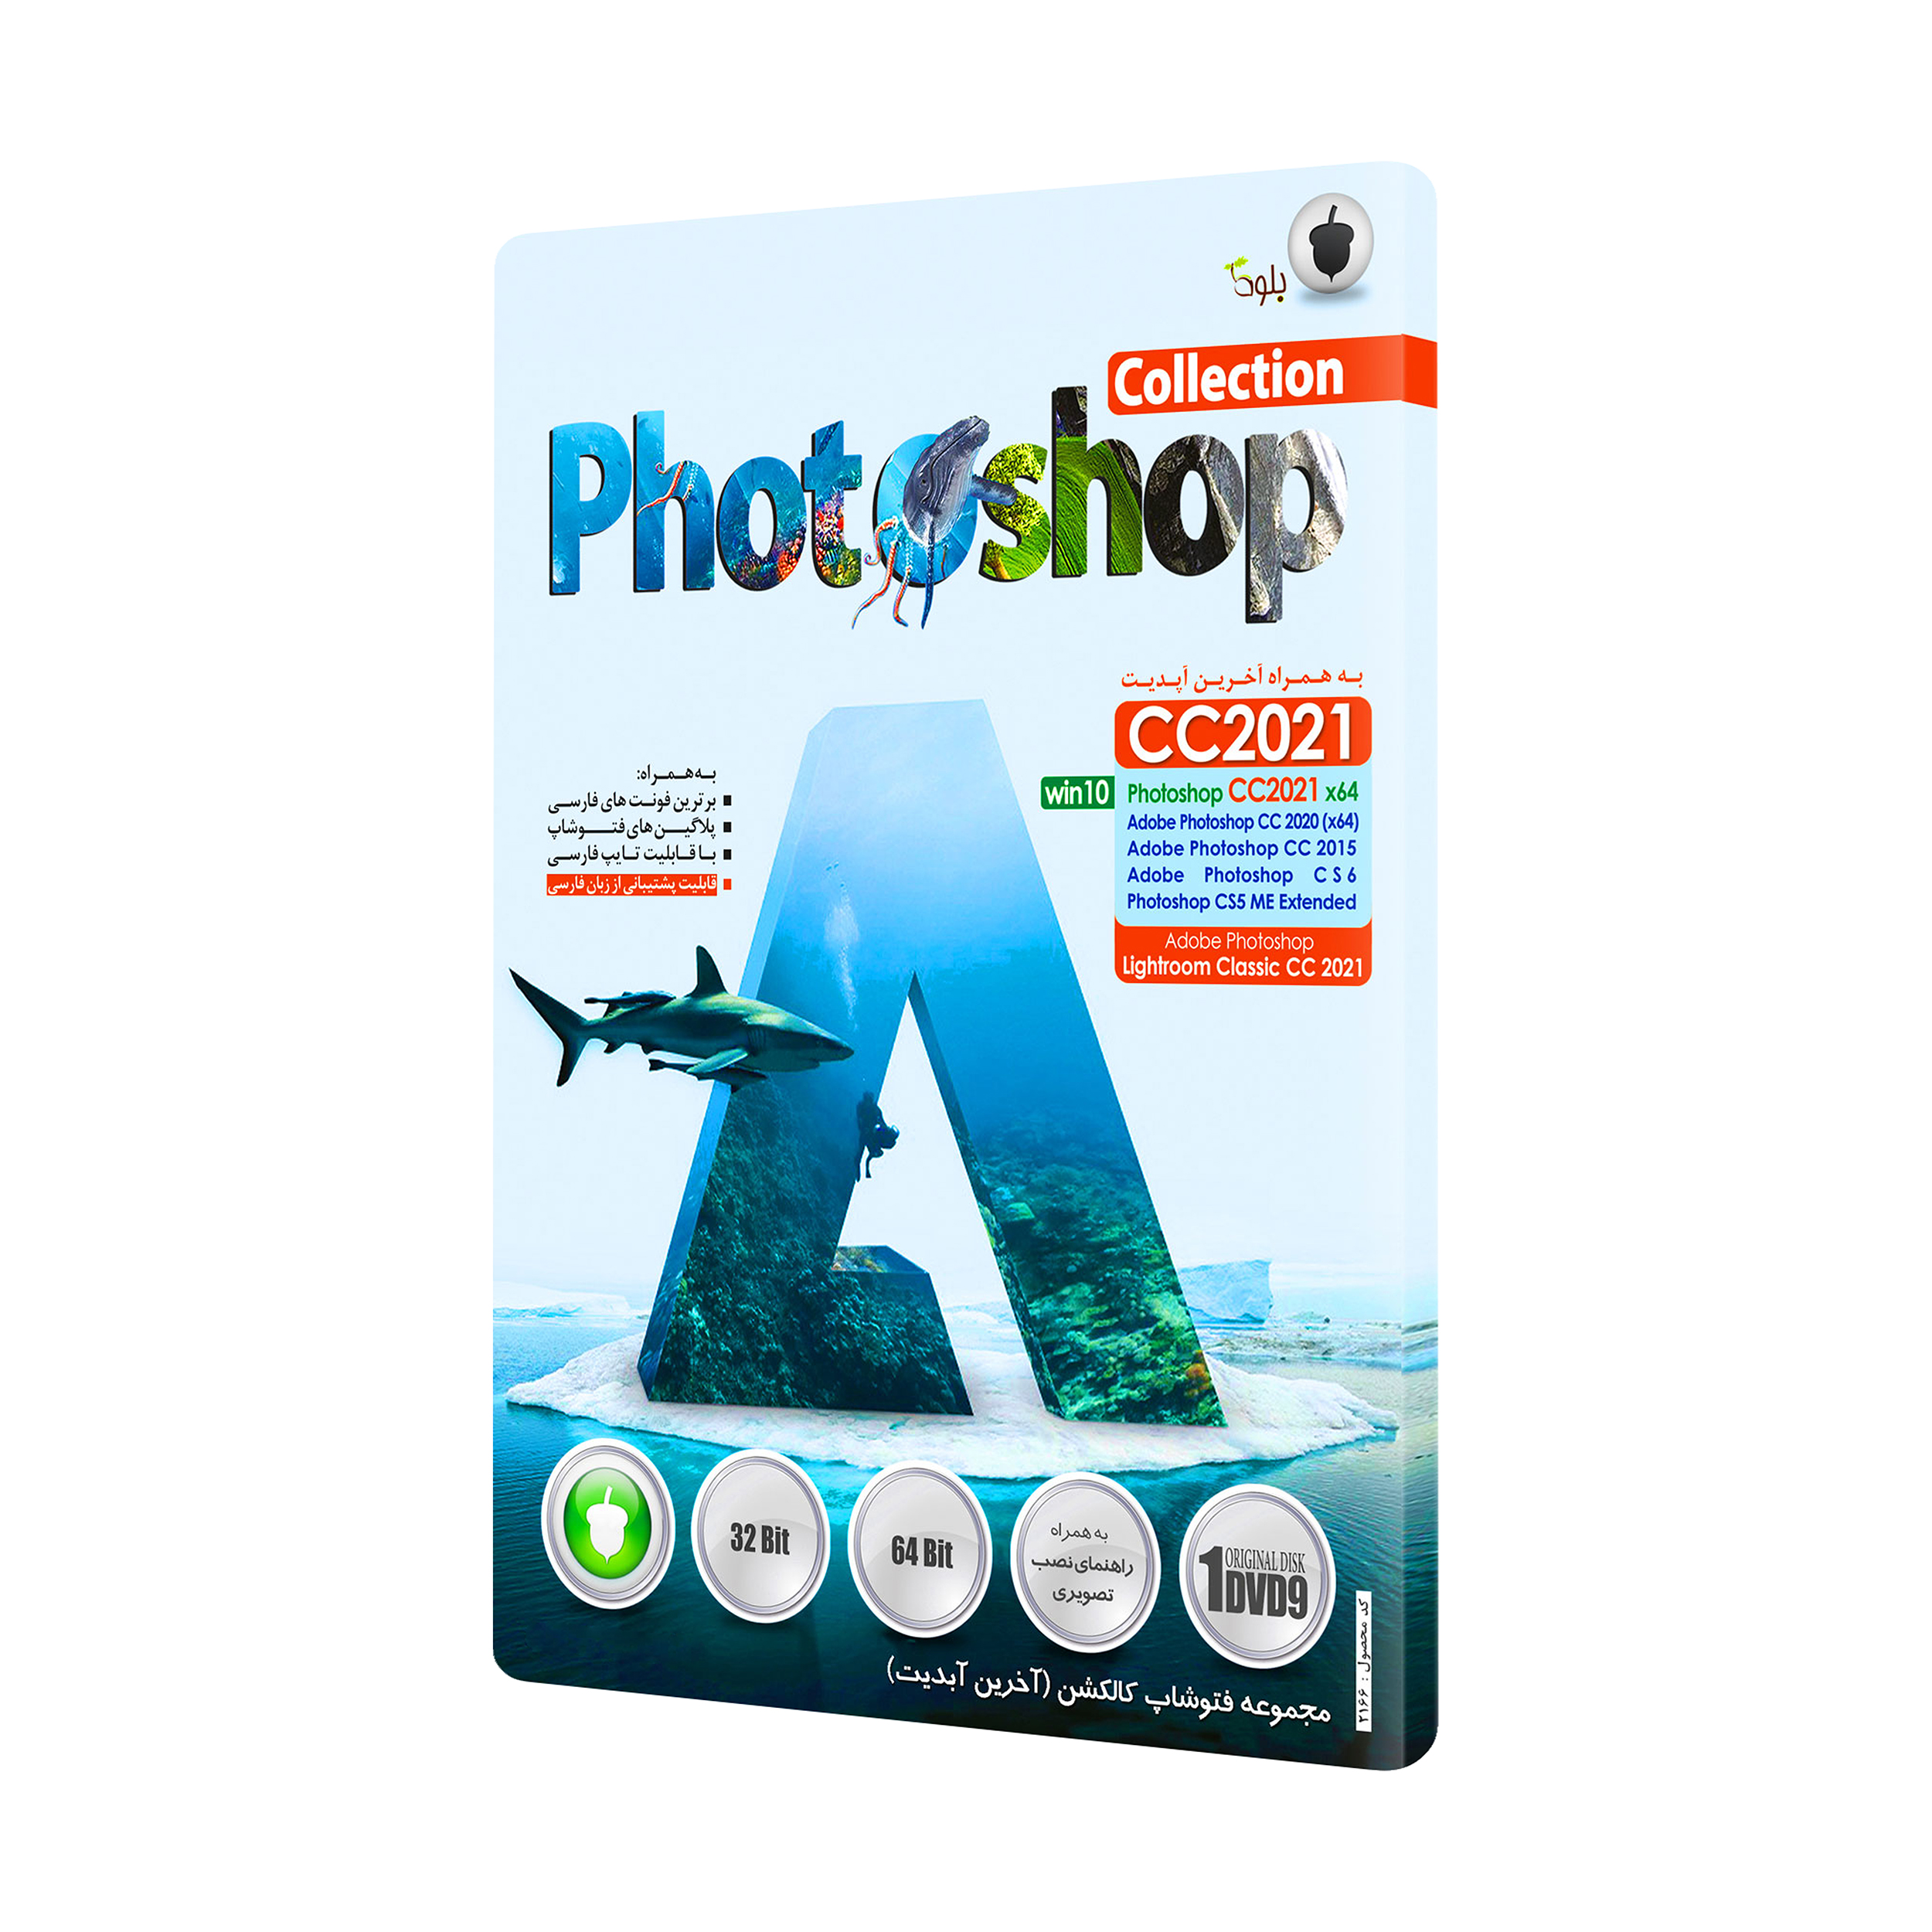 adobe photoshop cs5 price